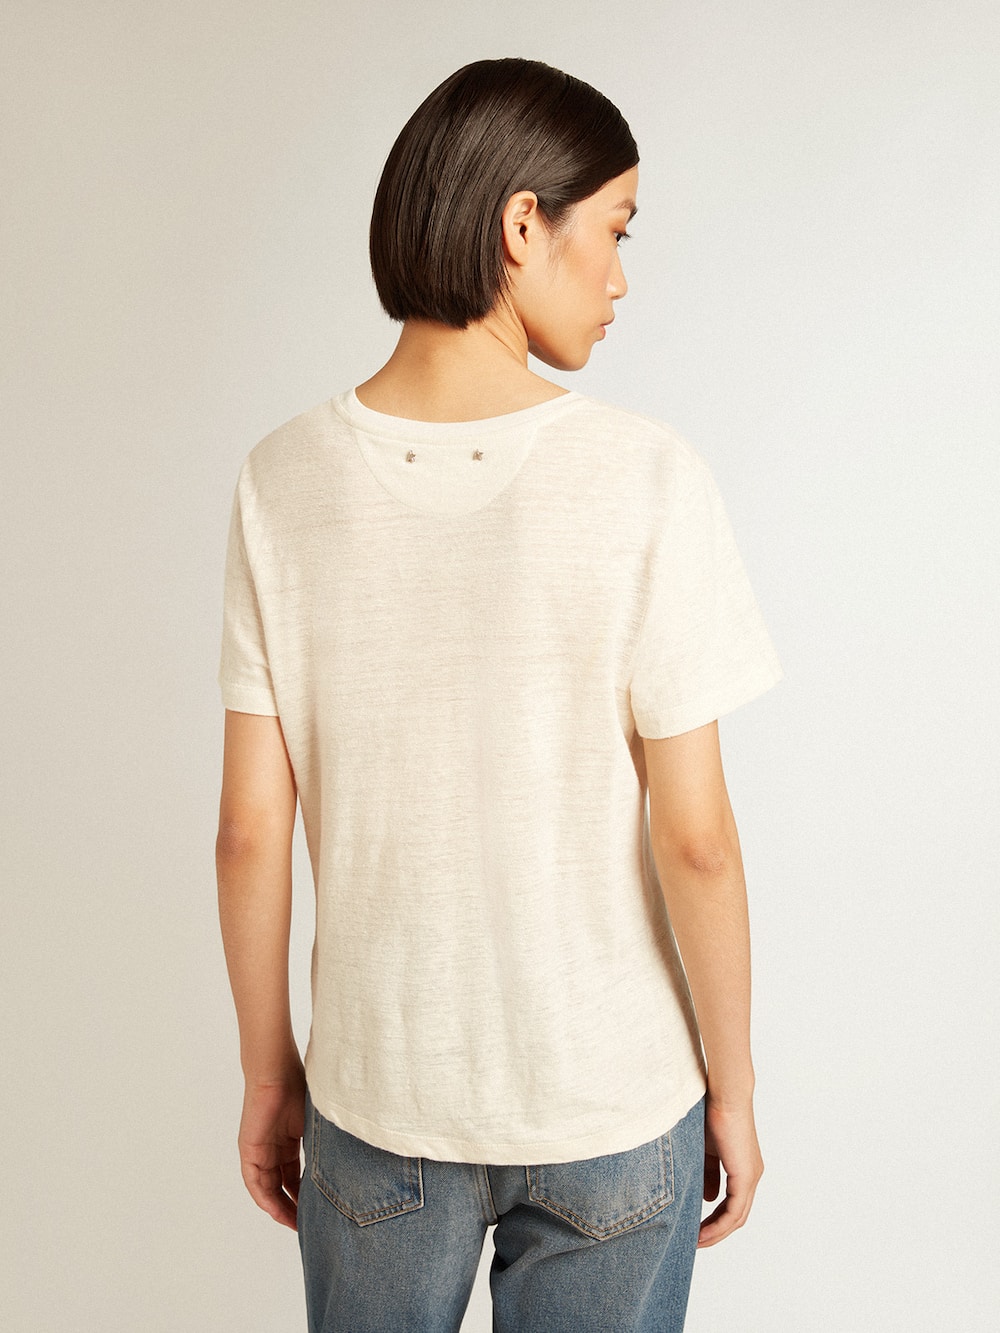 Golden Goose - T-shirt femme en coton blanc vieilli avec poche brodée in 